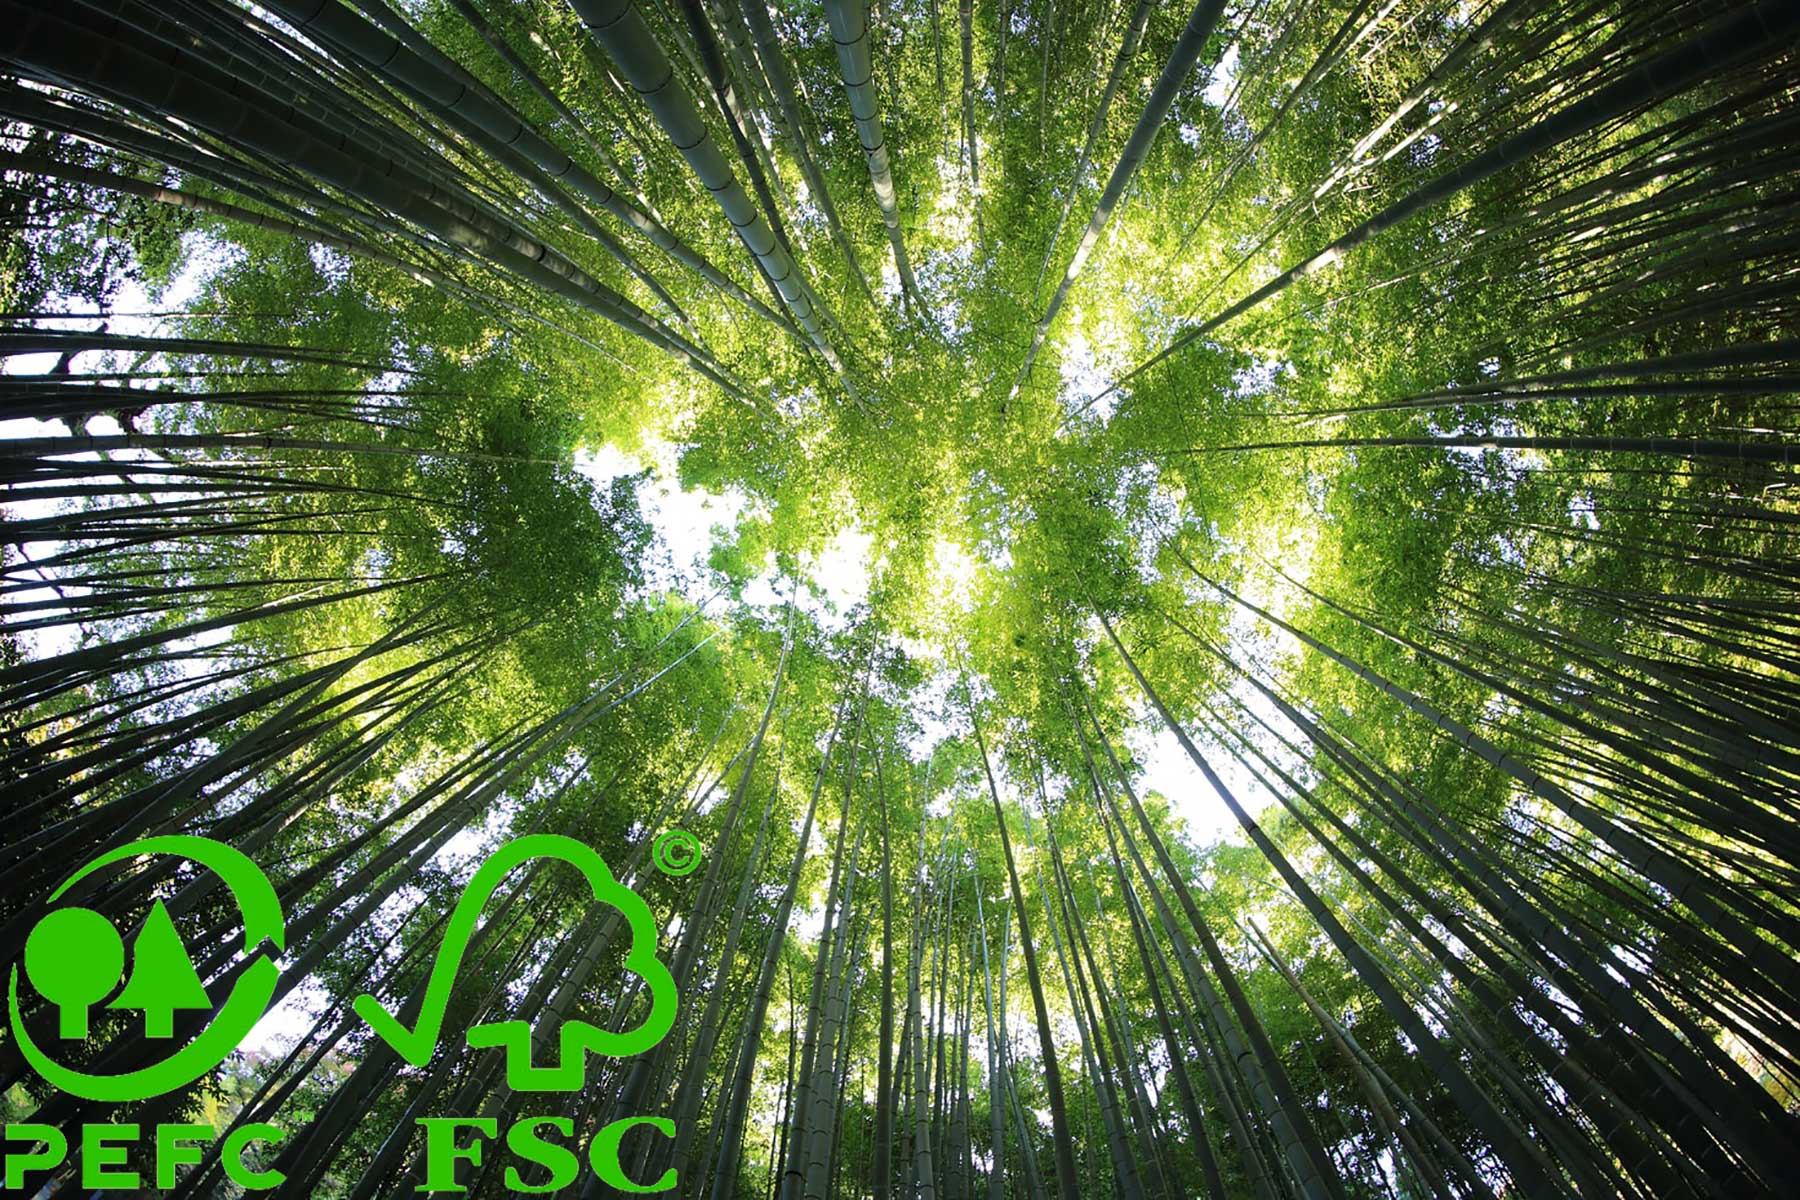 Bosques certficados PEFC FSC